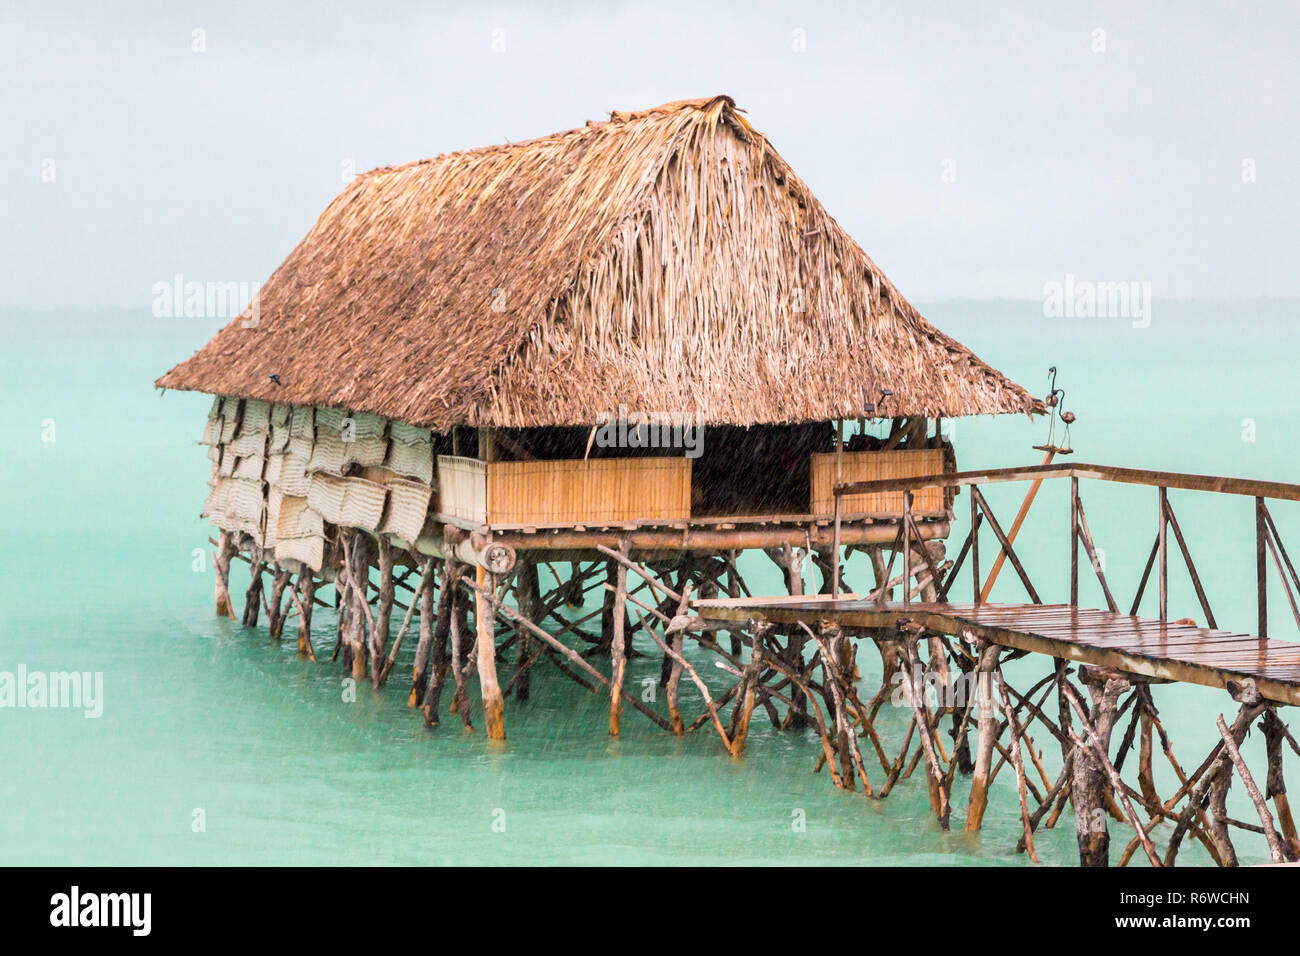 Toit de chaume sur pilotis bungalow cabane de population micronésienne, lagon de Tarawa Sud, forte pluie douche, saison humide, Kiribati, Micronésie, l'Océanie. Banque D'Images